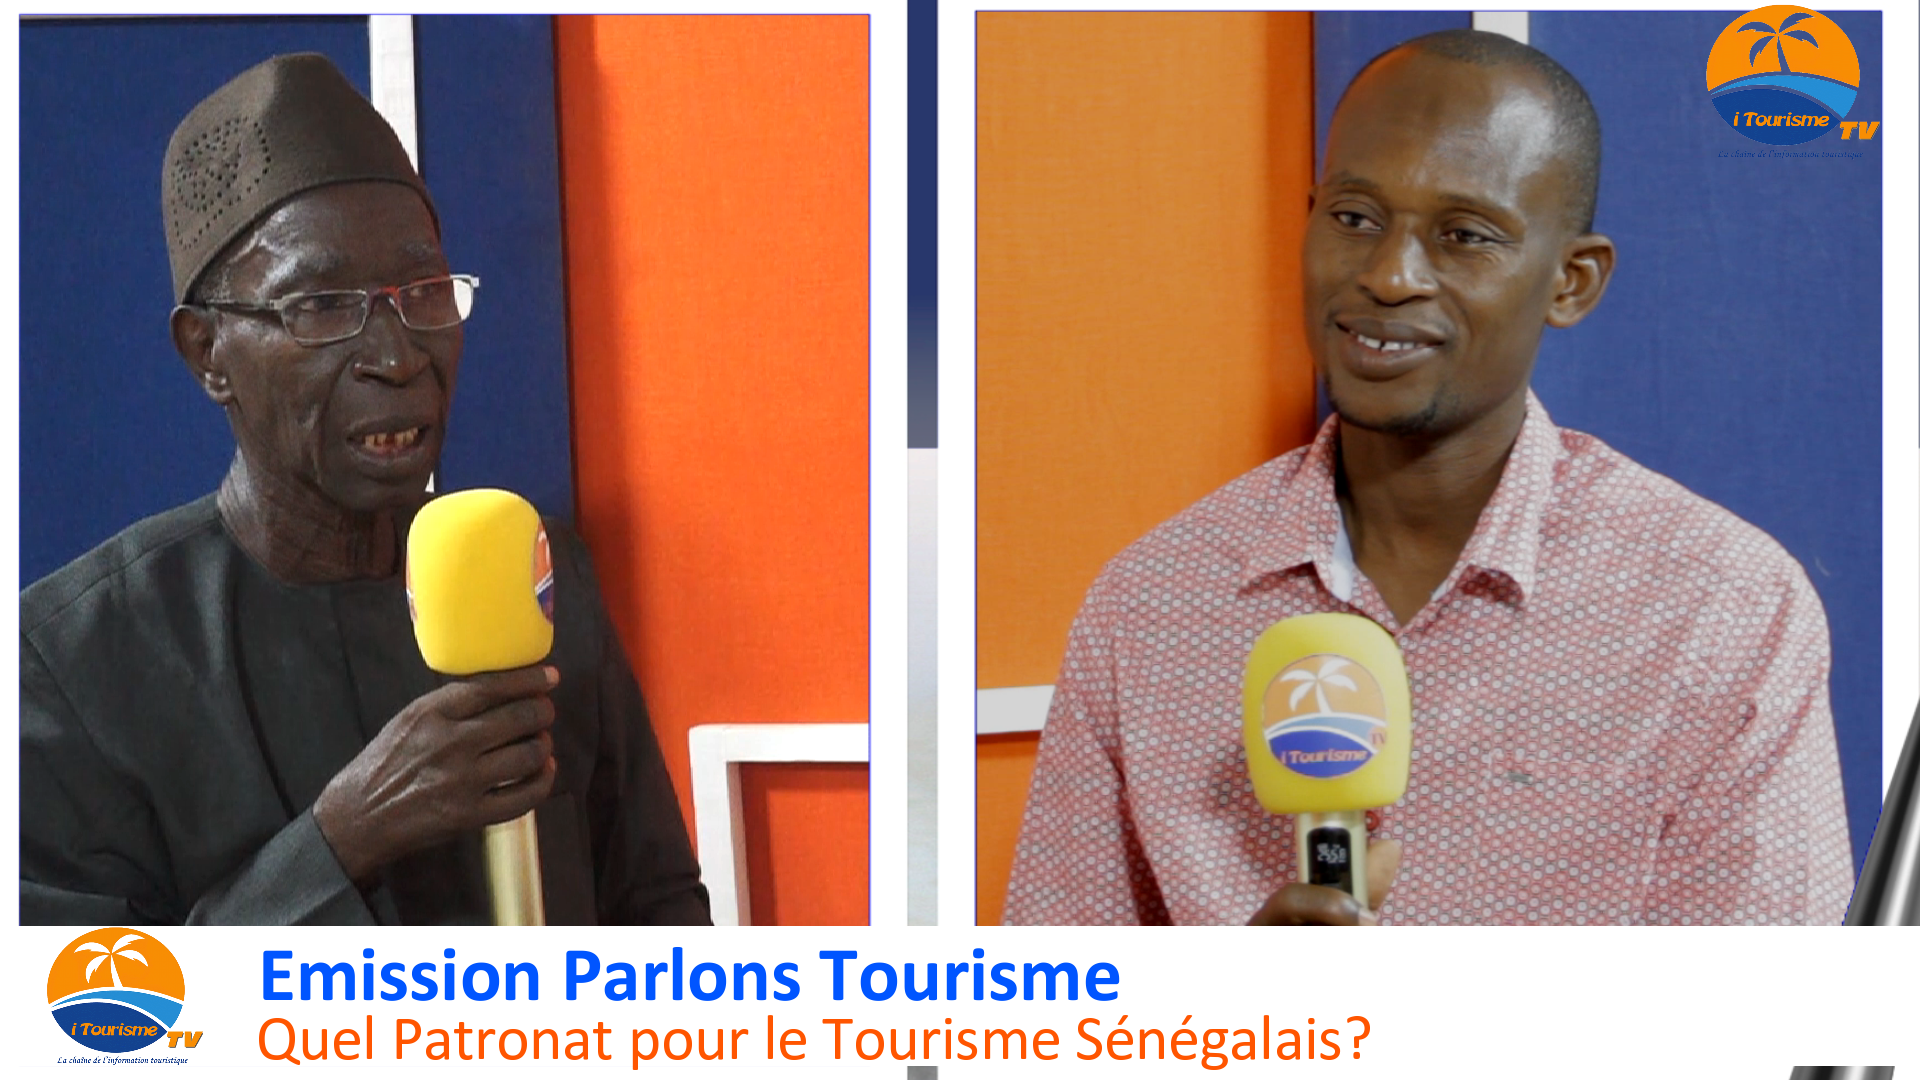 Emission Parlons Tourisme: Quel Patronat pour Tourisme Sénégalais?